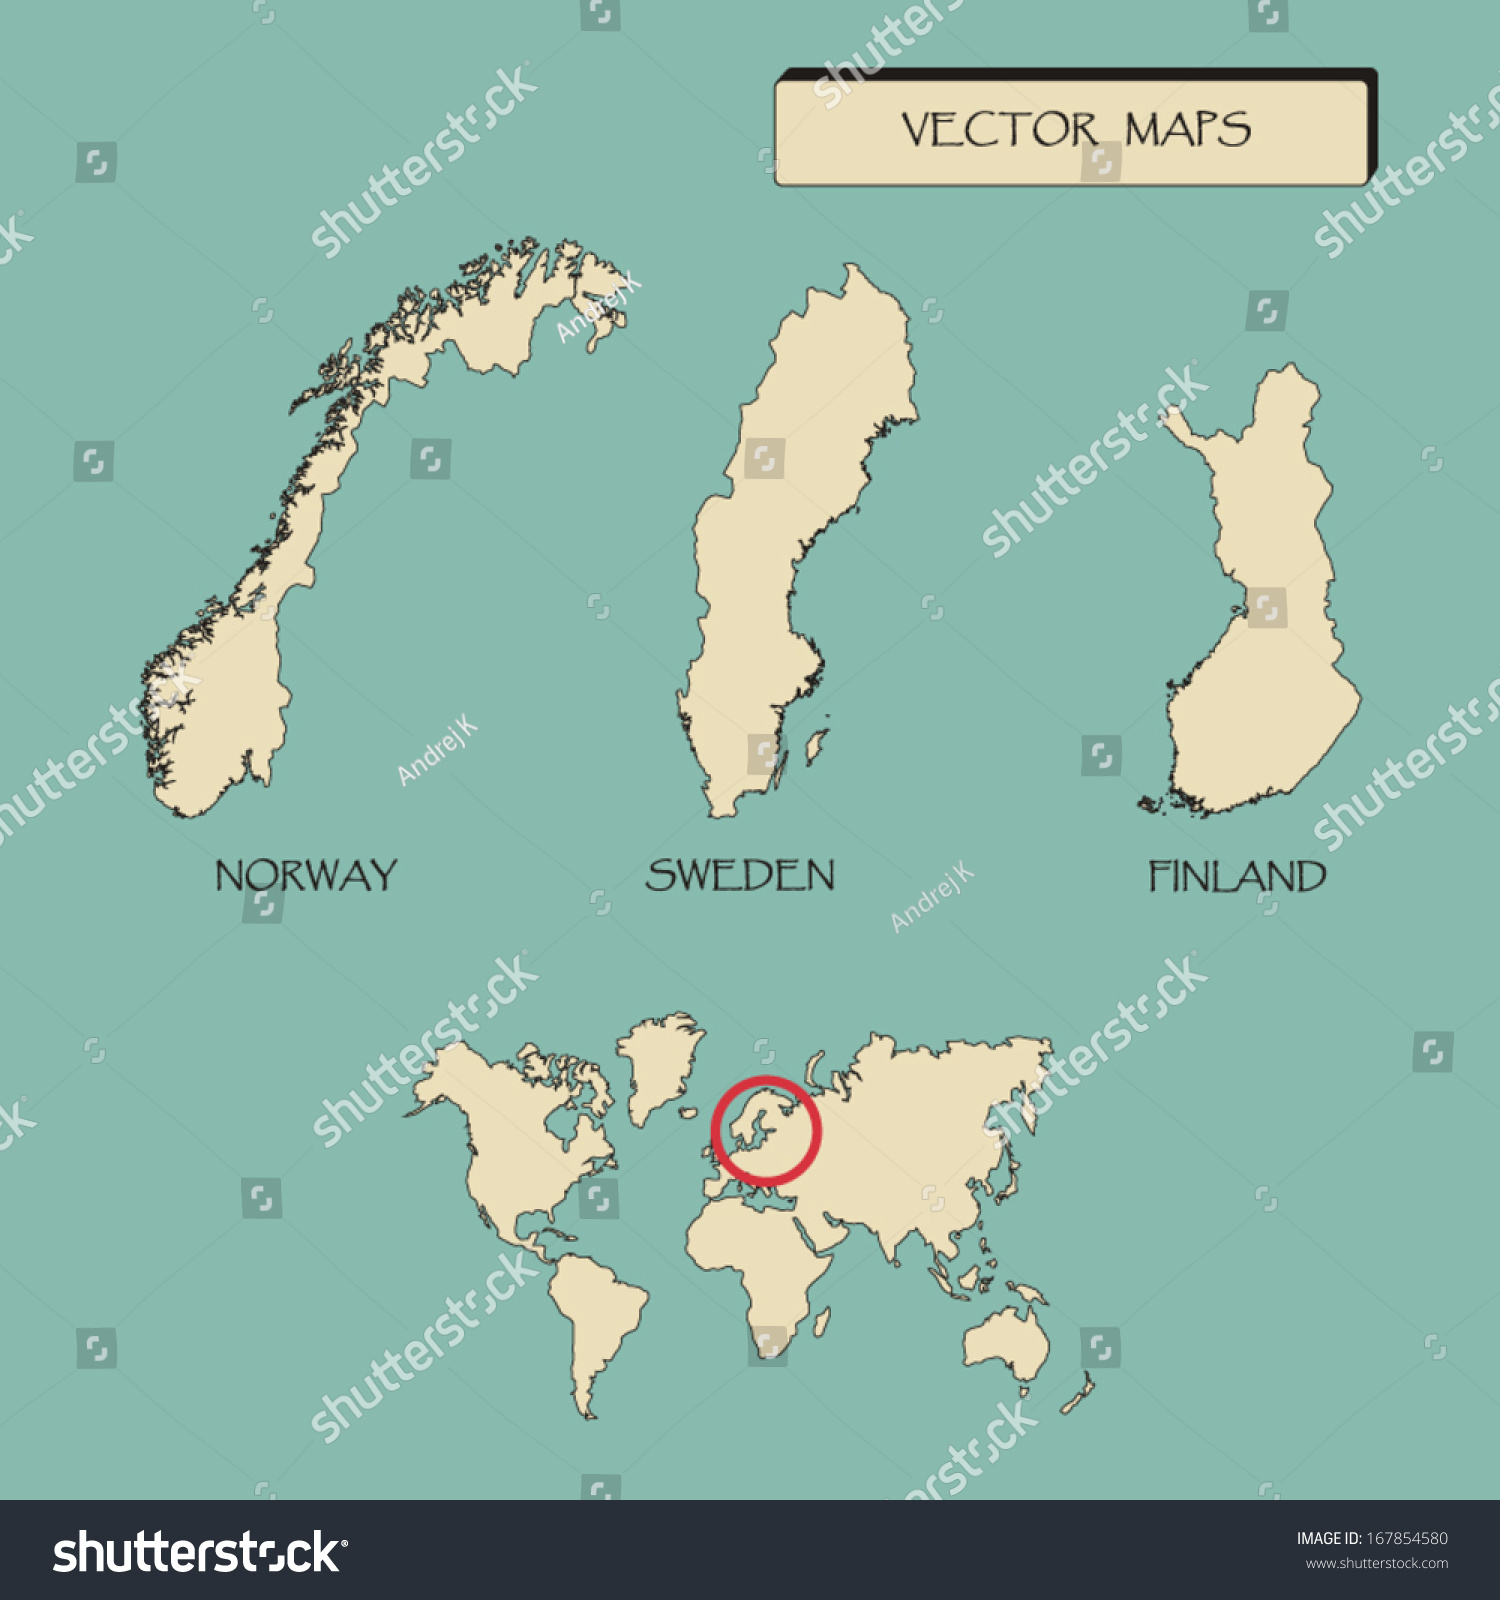 北欧国家挪威瑞典芬兰地图矢量插图-背景\/素材